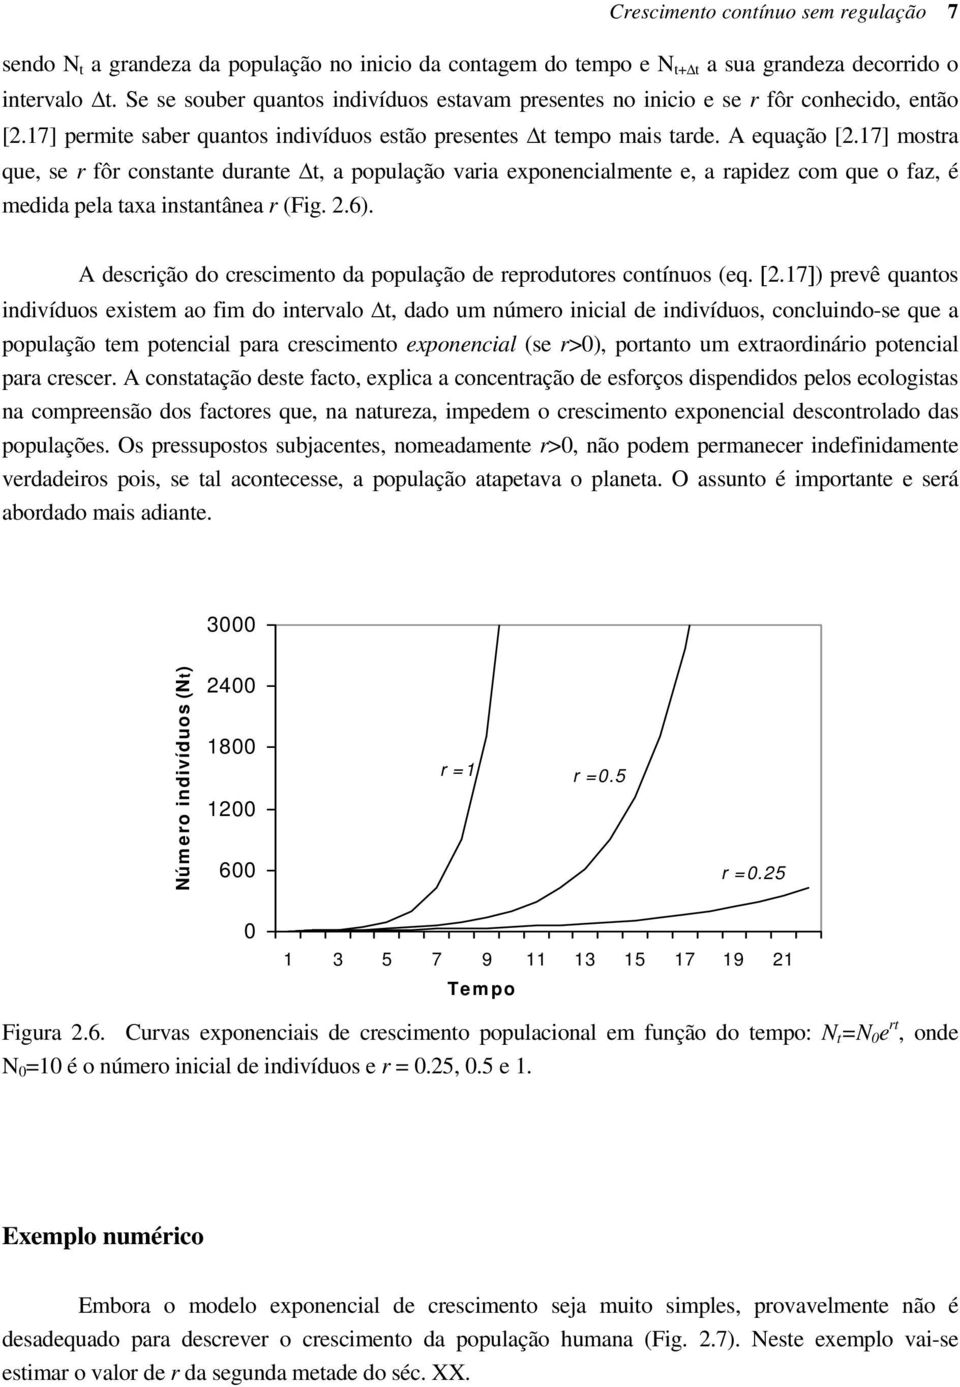 17] mosra que, se r fôr consane durane, a população varia exponencialmene e, a rapidez com que o faz, é medida pela axa insanânea r (Fig. 2.6).